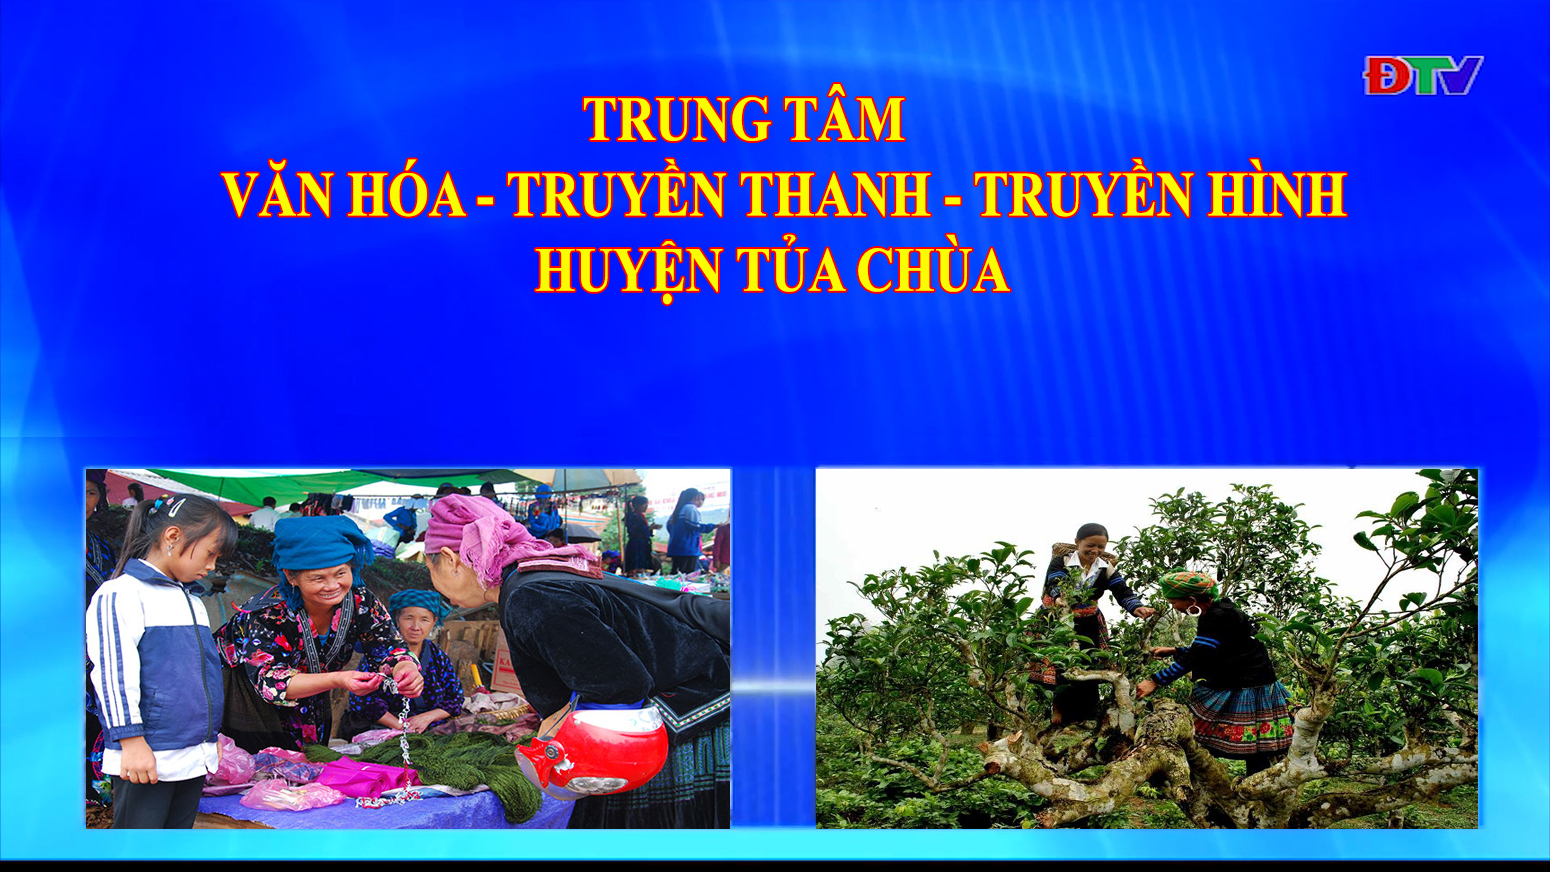 Trung tâm Văn hóa Truyền thanh Truyền hình huyện Tủa Chùa (Ngày 7-8-2020)